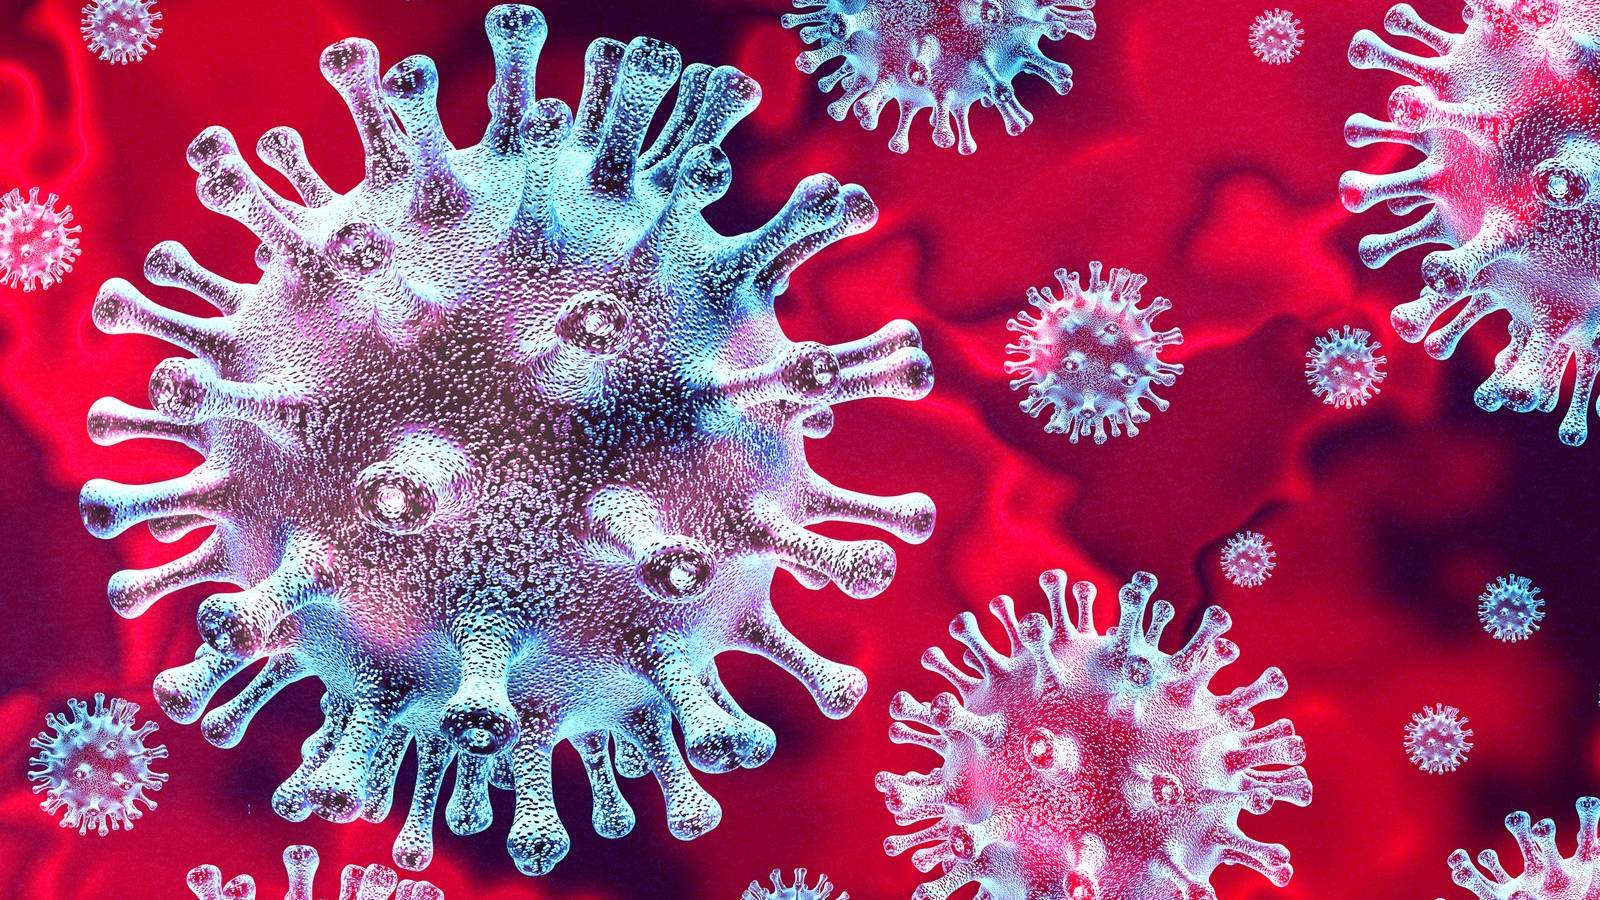 Rumänska coronavirusfall botade den 17 juli